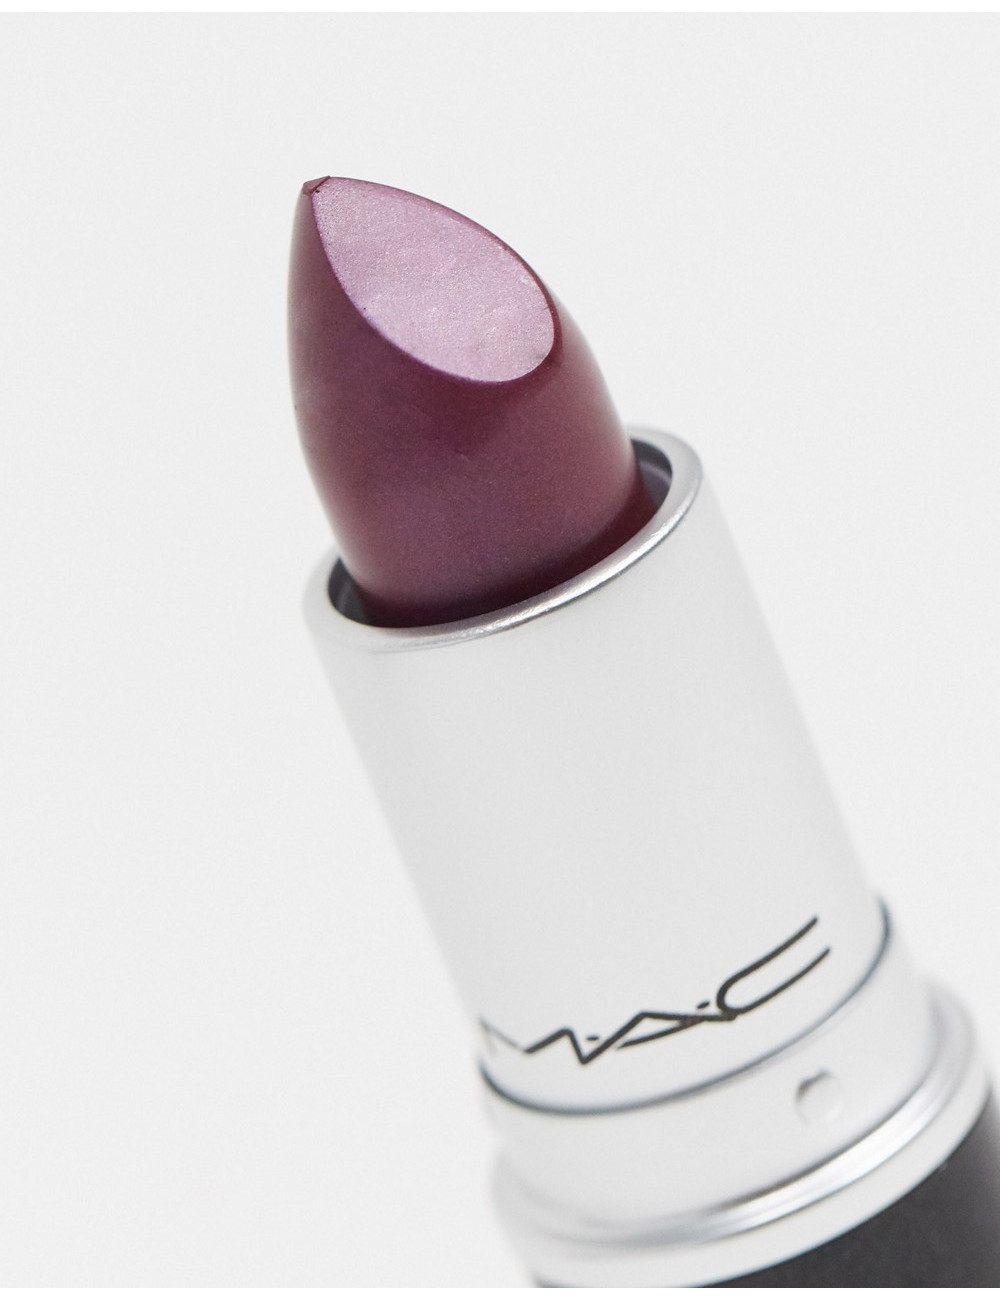 MAC Frost Lipstick - Odyssey